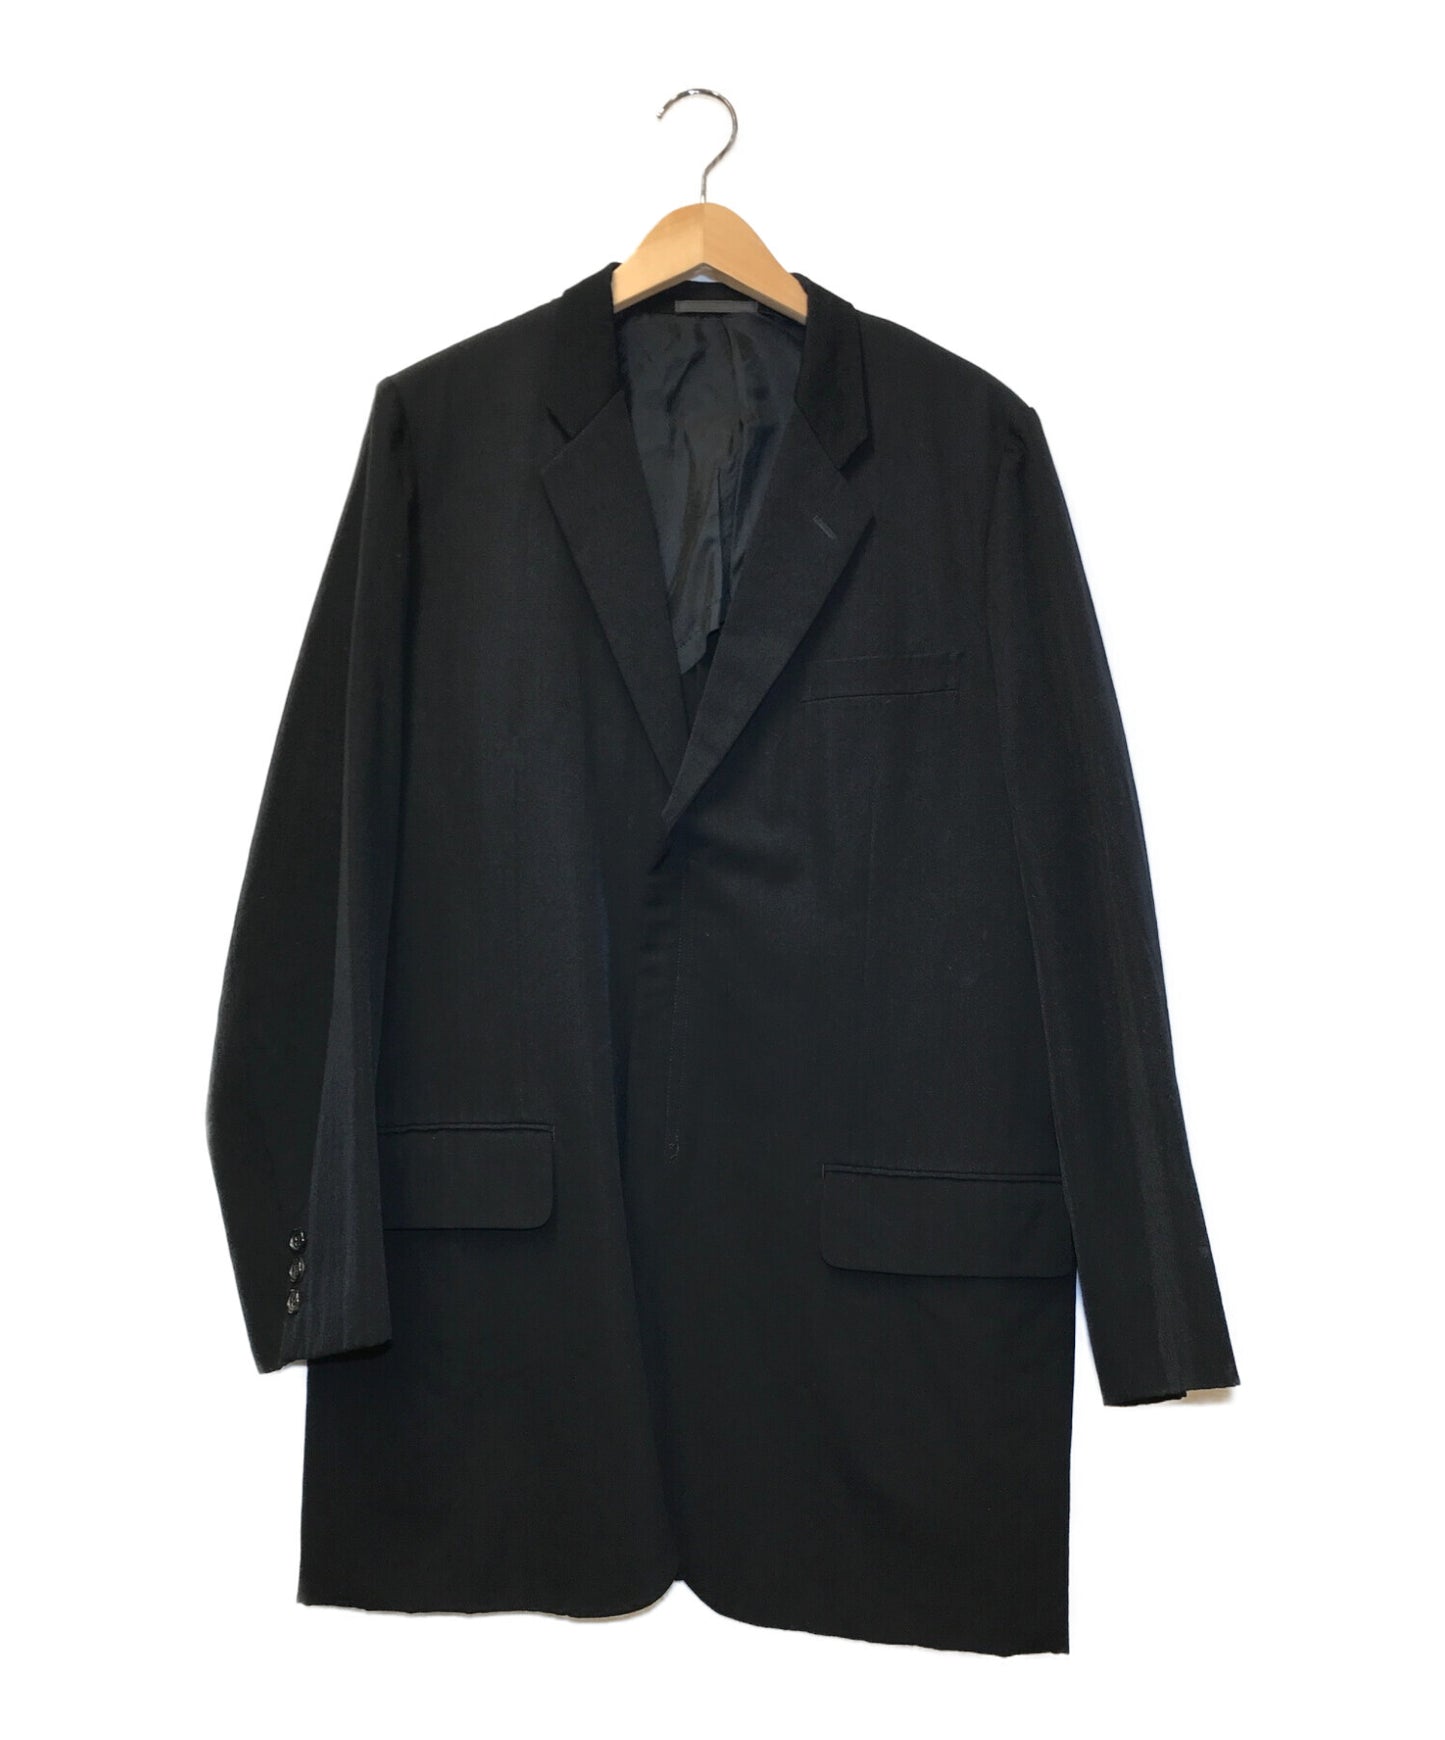 Comme des Garcons Homme [Old] 90 Wool Gabardine Zip Jacket Jacket Tailored Jacket HJ-11004M